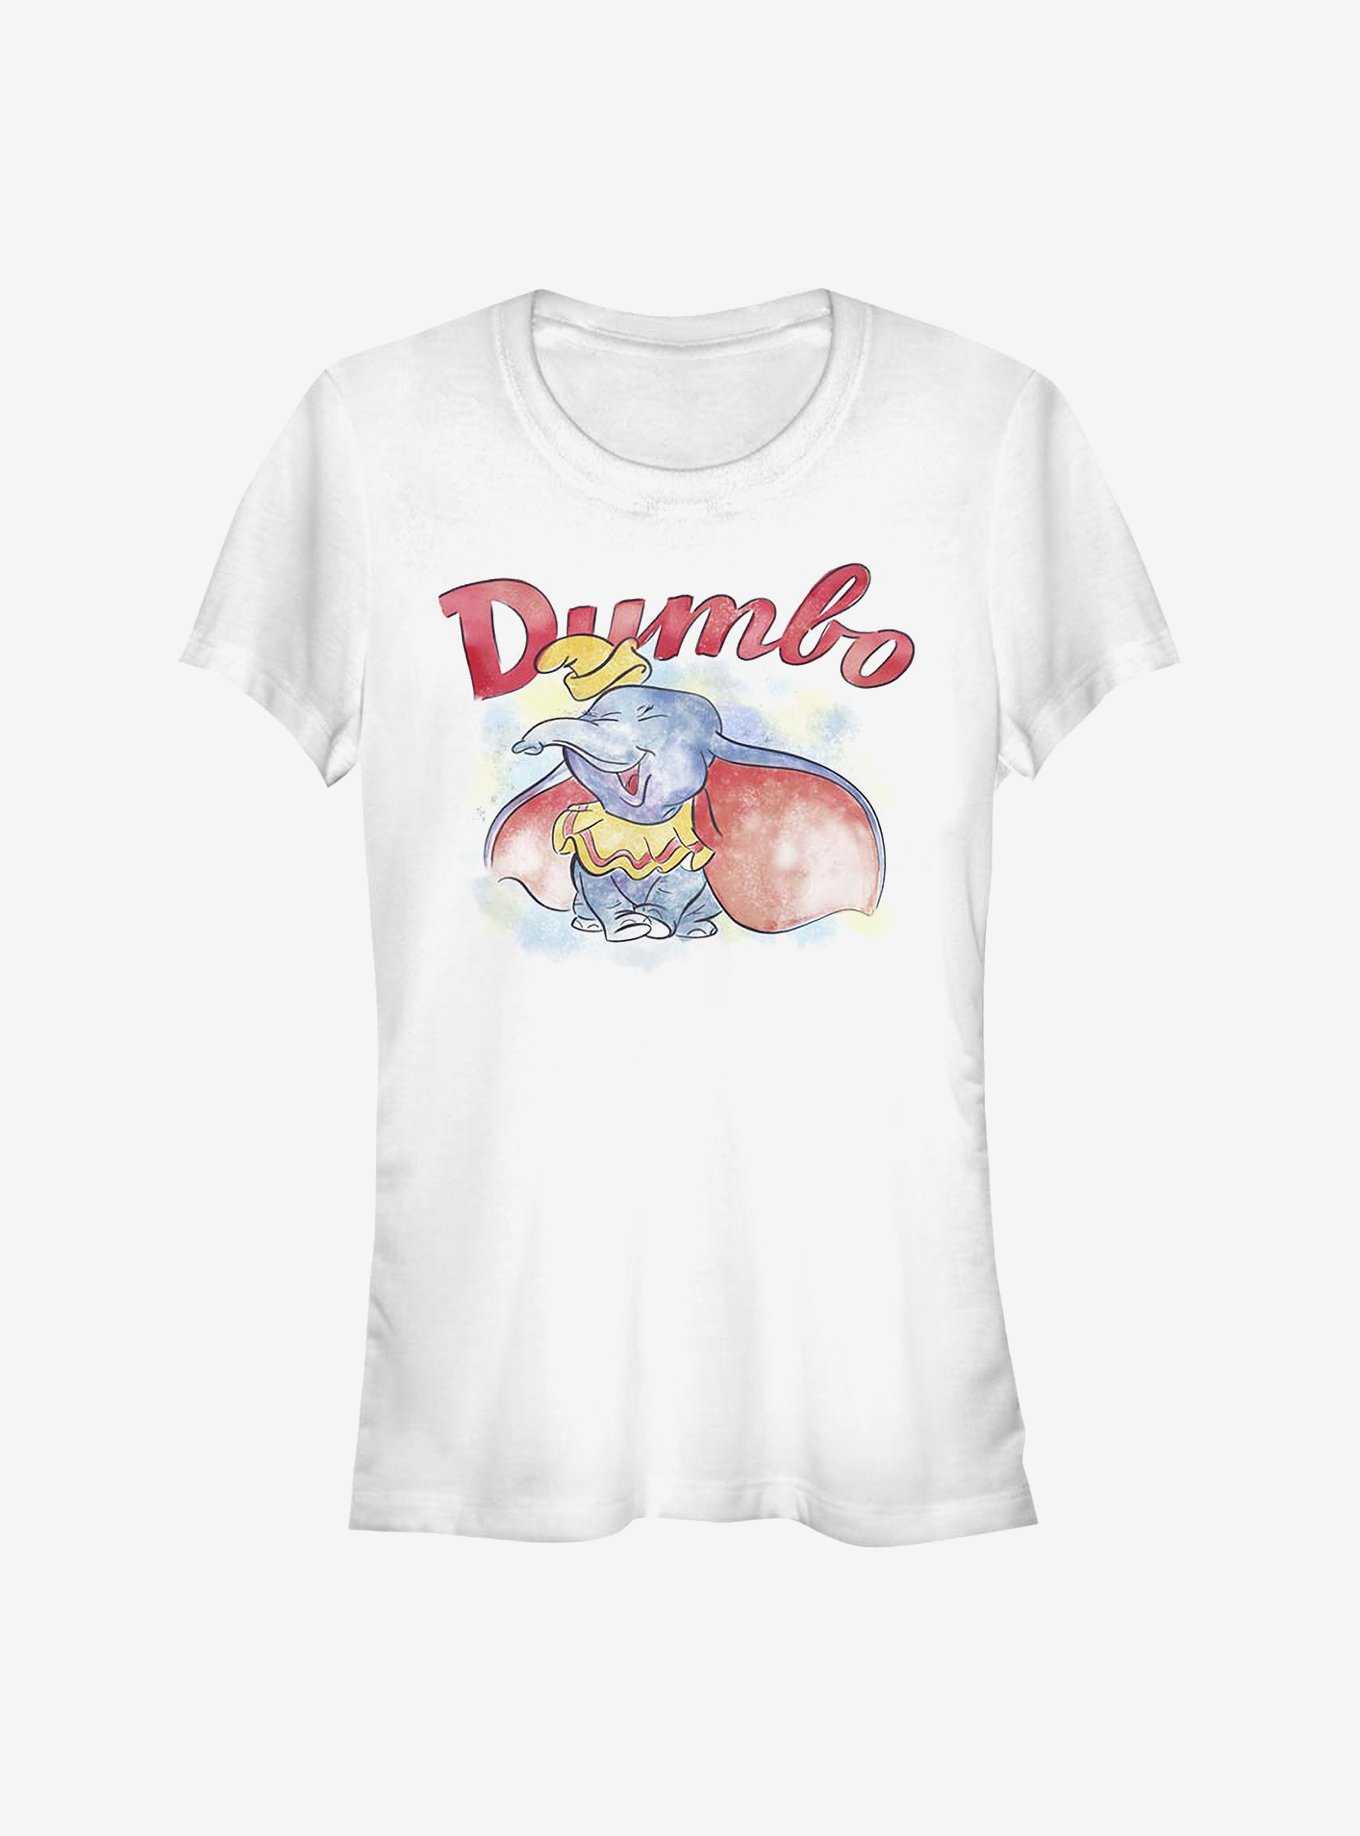 Disney Dumbo Watercolor Girls T-Shirt, , hi-res